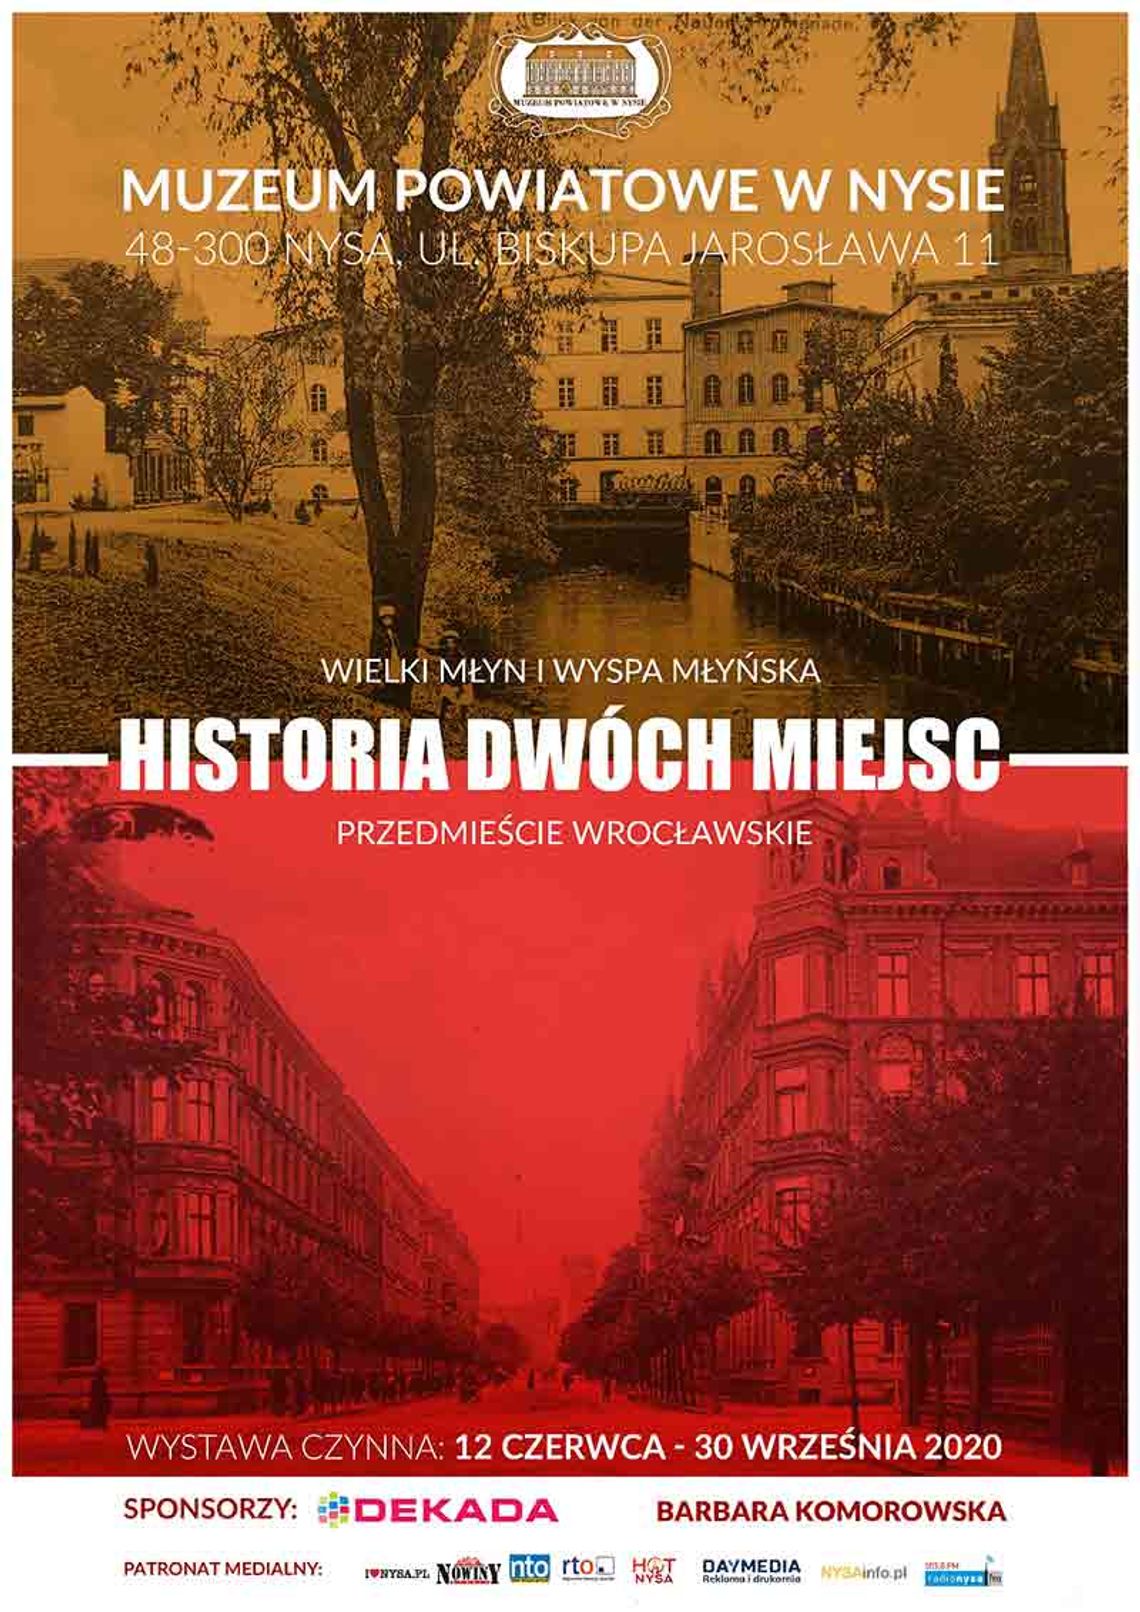 Wystawa - Historia dwóch miejsc: Wielki Młyn i Wyspa Młyńska oraz Przedmieście Wrocławskie.